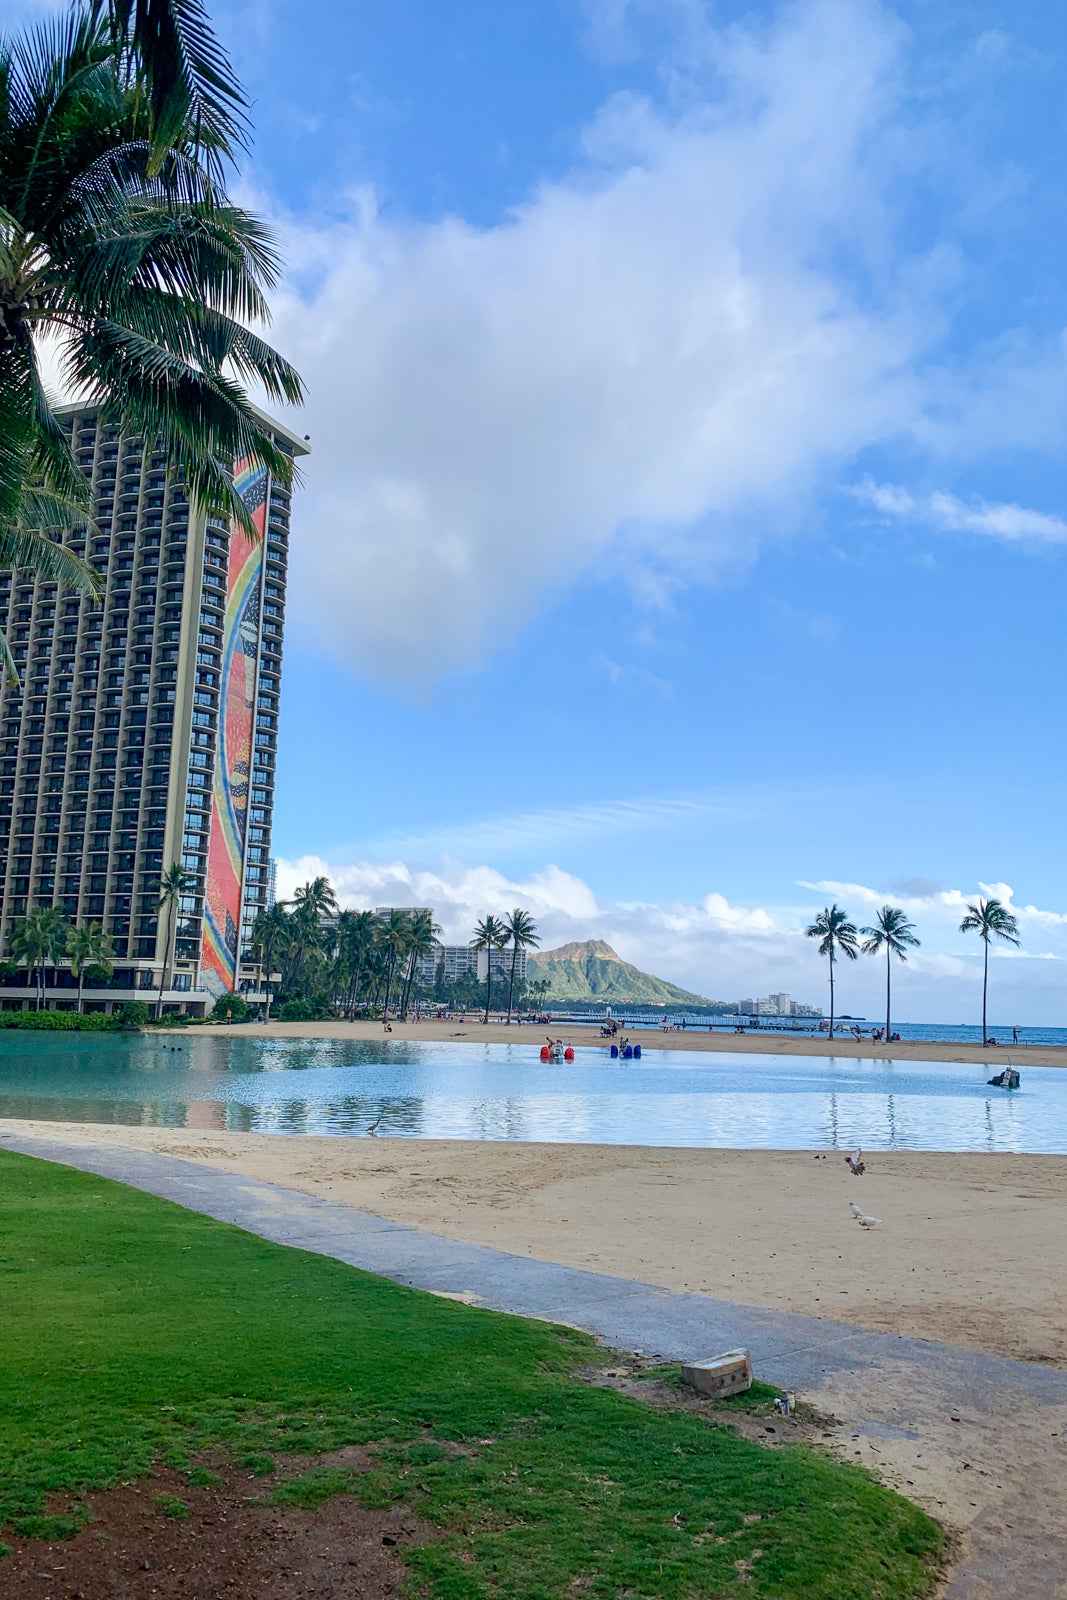 🇺🇸 The Hilton Hawaiian Village 🇺🇸